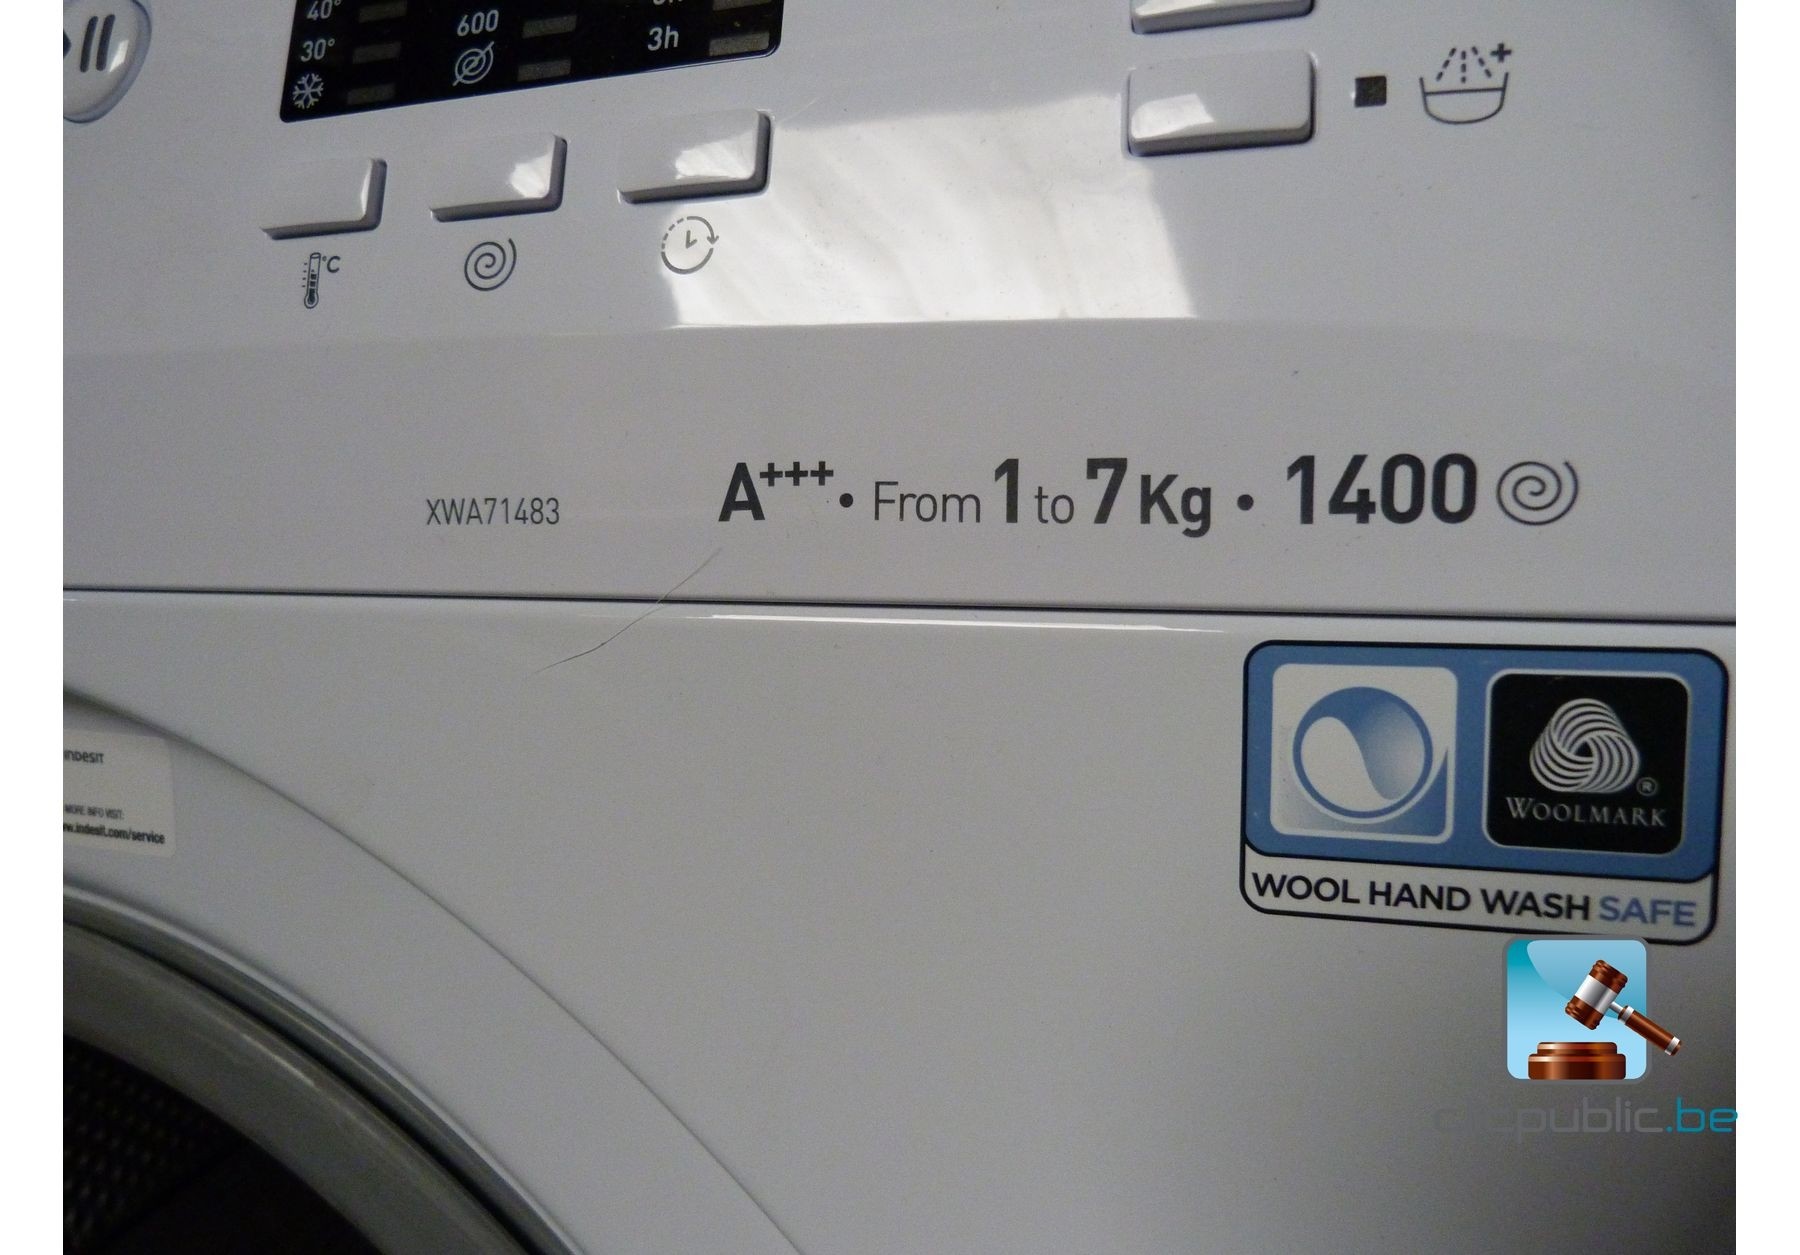 uit diefstal Generator Wasmachine INDESIT XWA 71483 XWEU de classe A+++ (ref. 36) - Clicpublic.be,  openbare verkopen in één klik.